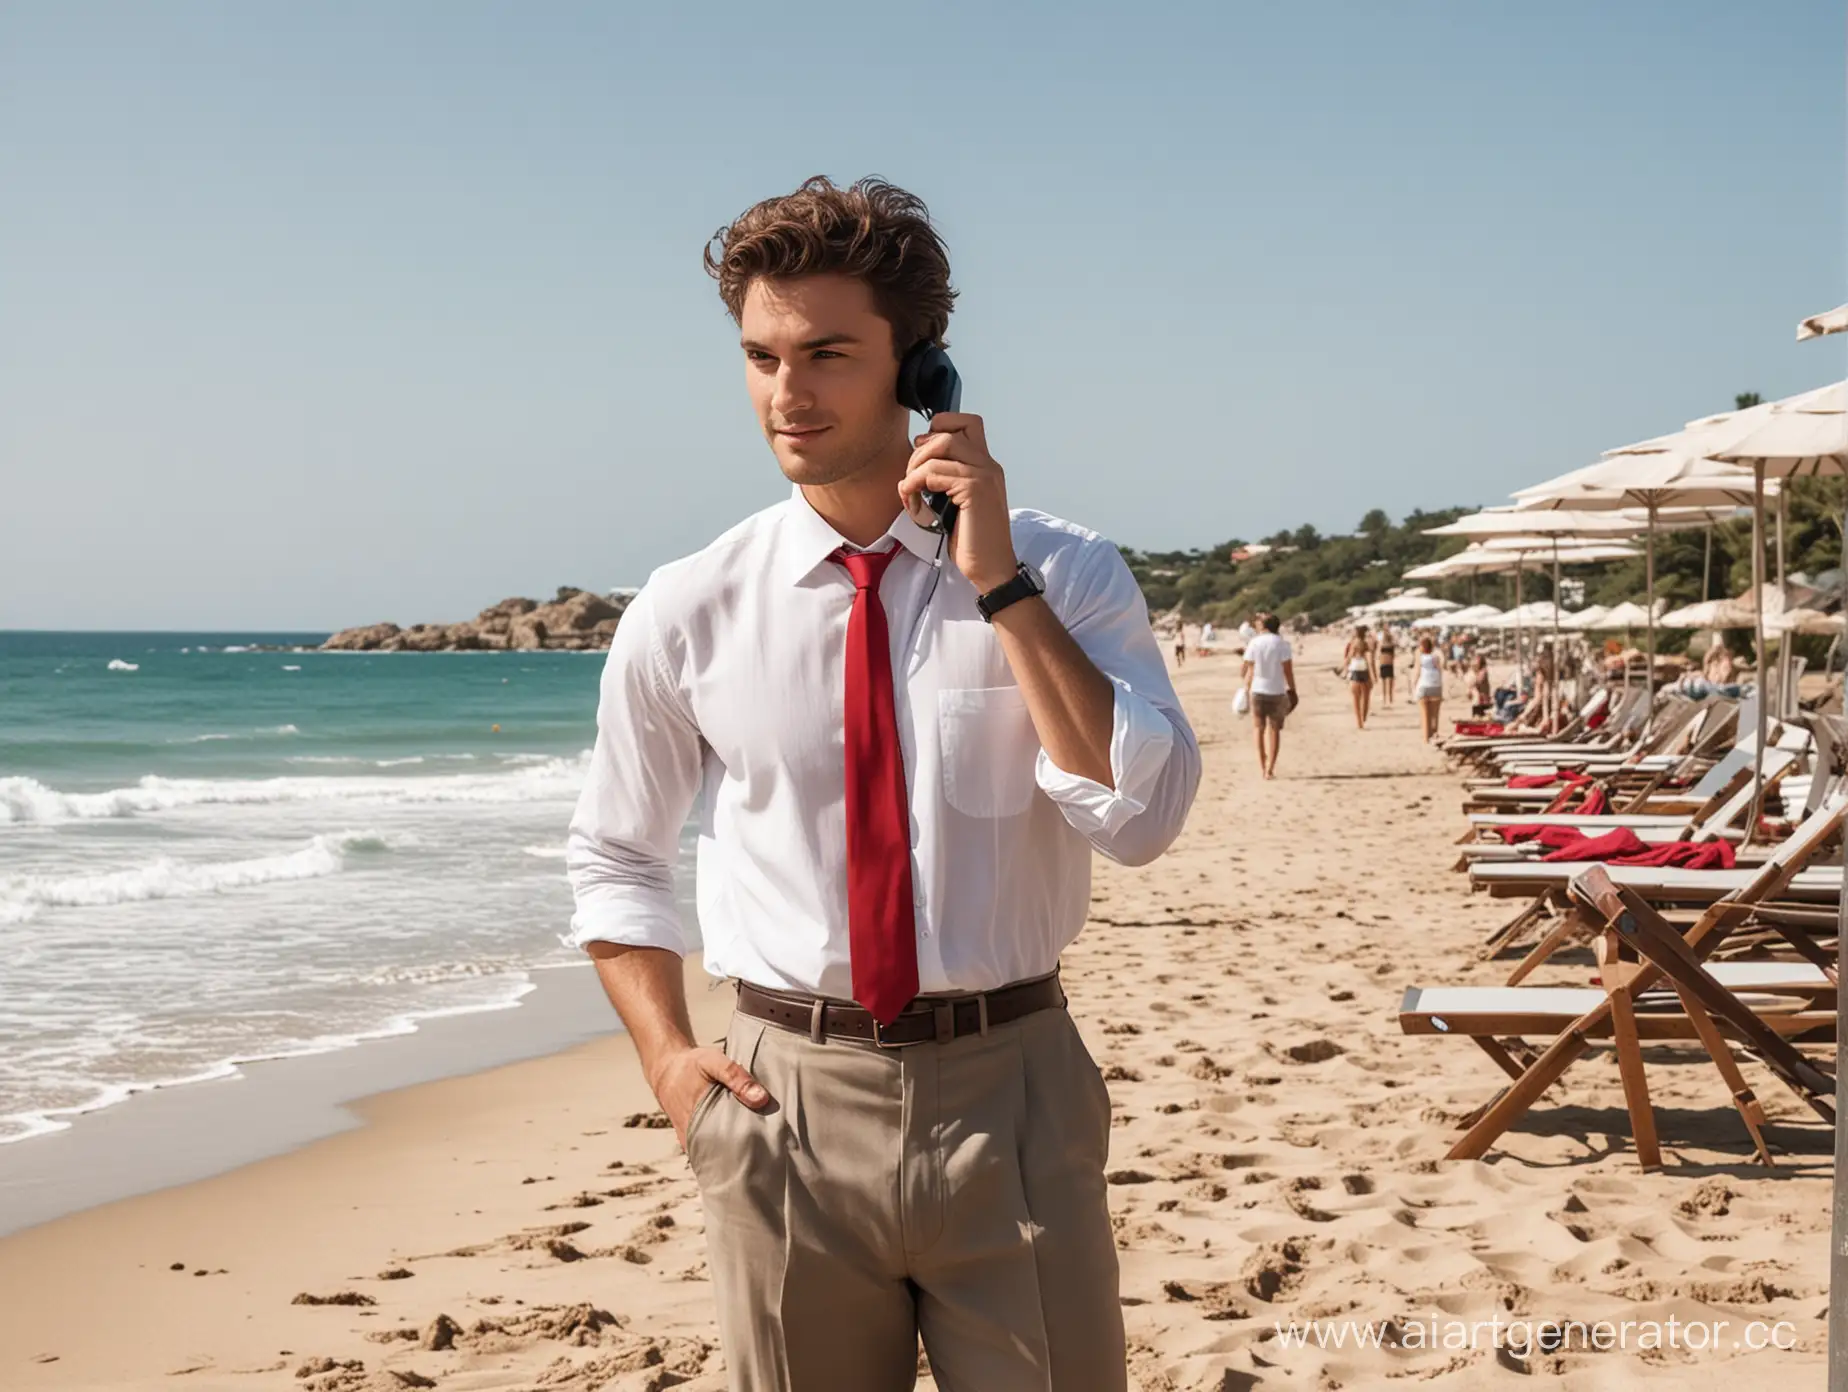 мужчина расположен с левой стороны изображения, в руках у него телефонная трубка, одет в белую рубашку с красным галстуком, серые брюки с коричневым ремнем, на заднем фоне пляж с лежаками, мимо него проходит красивая девушка в купальнике